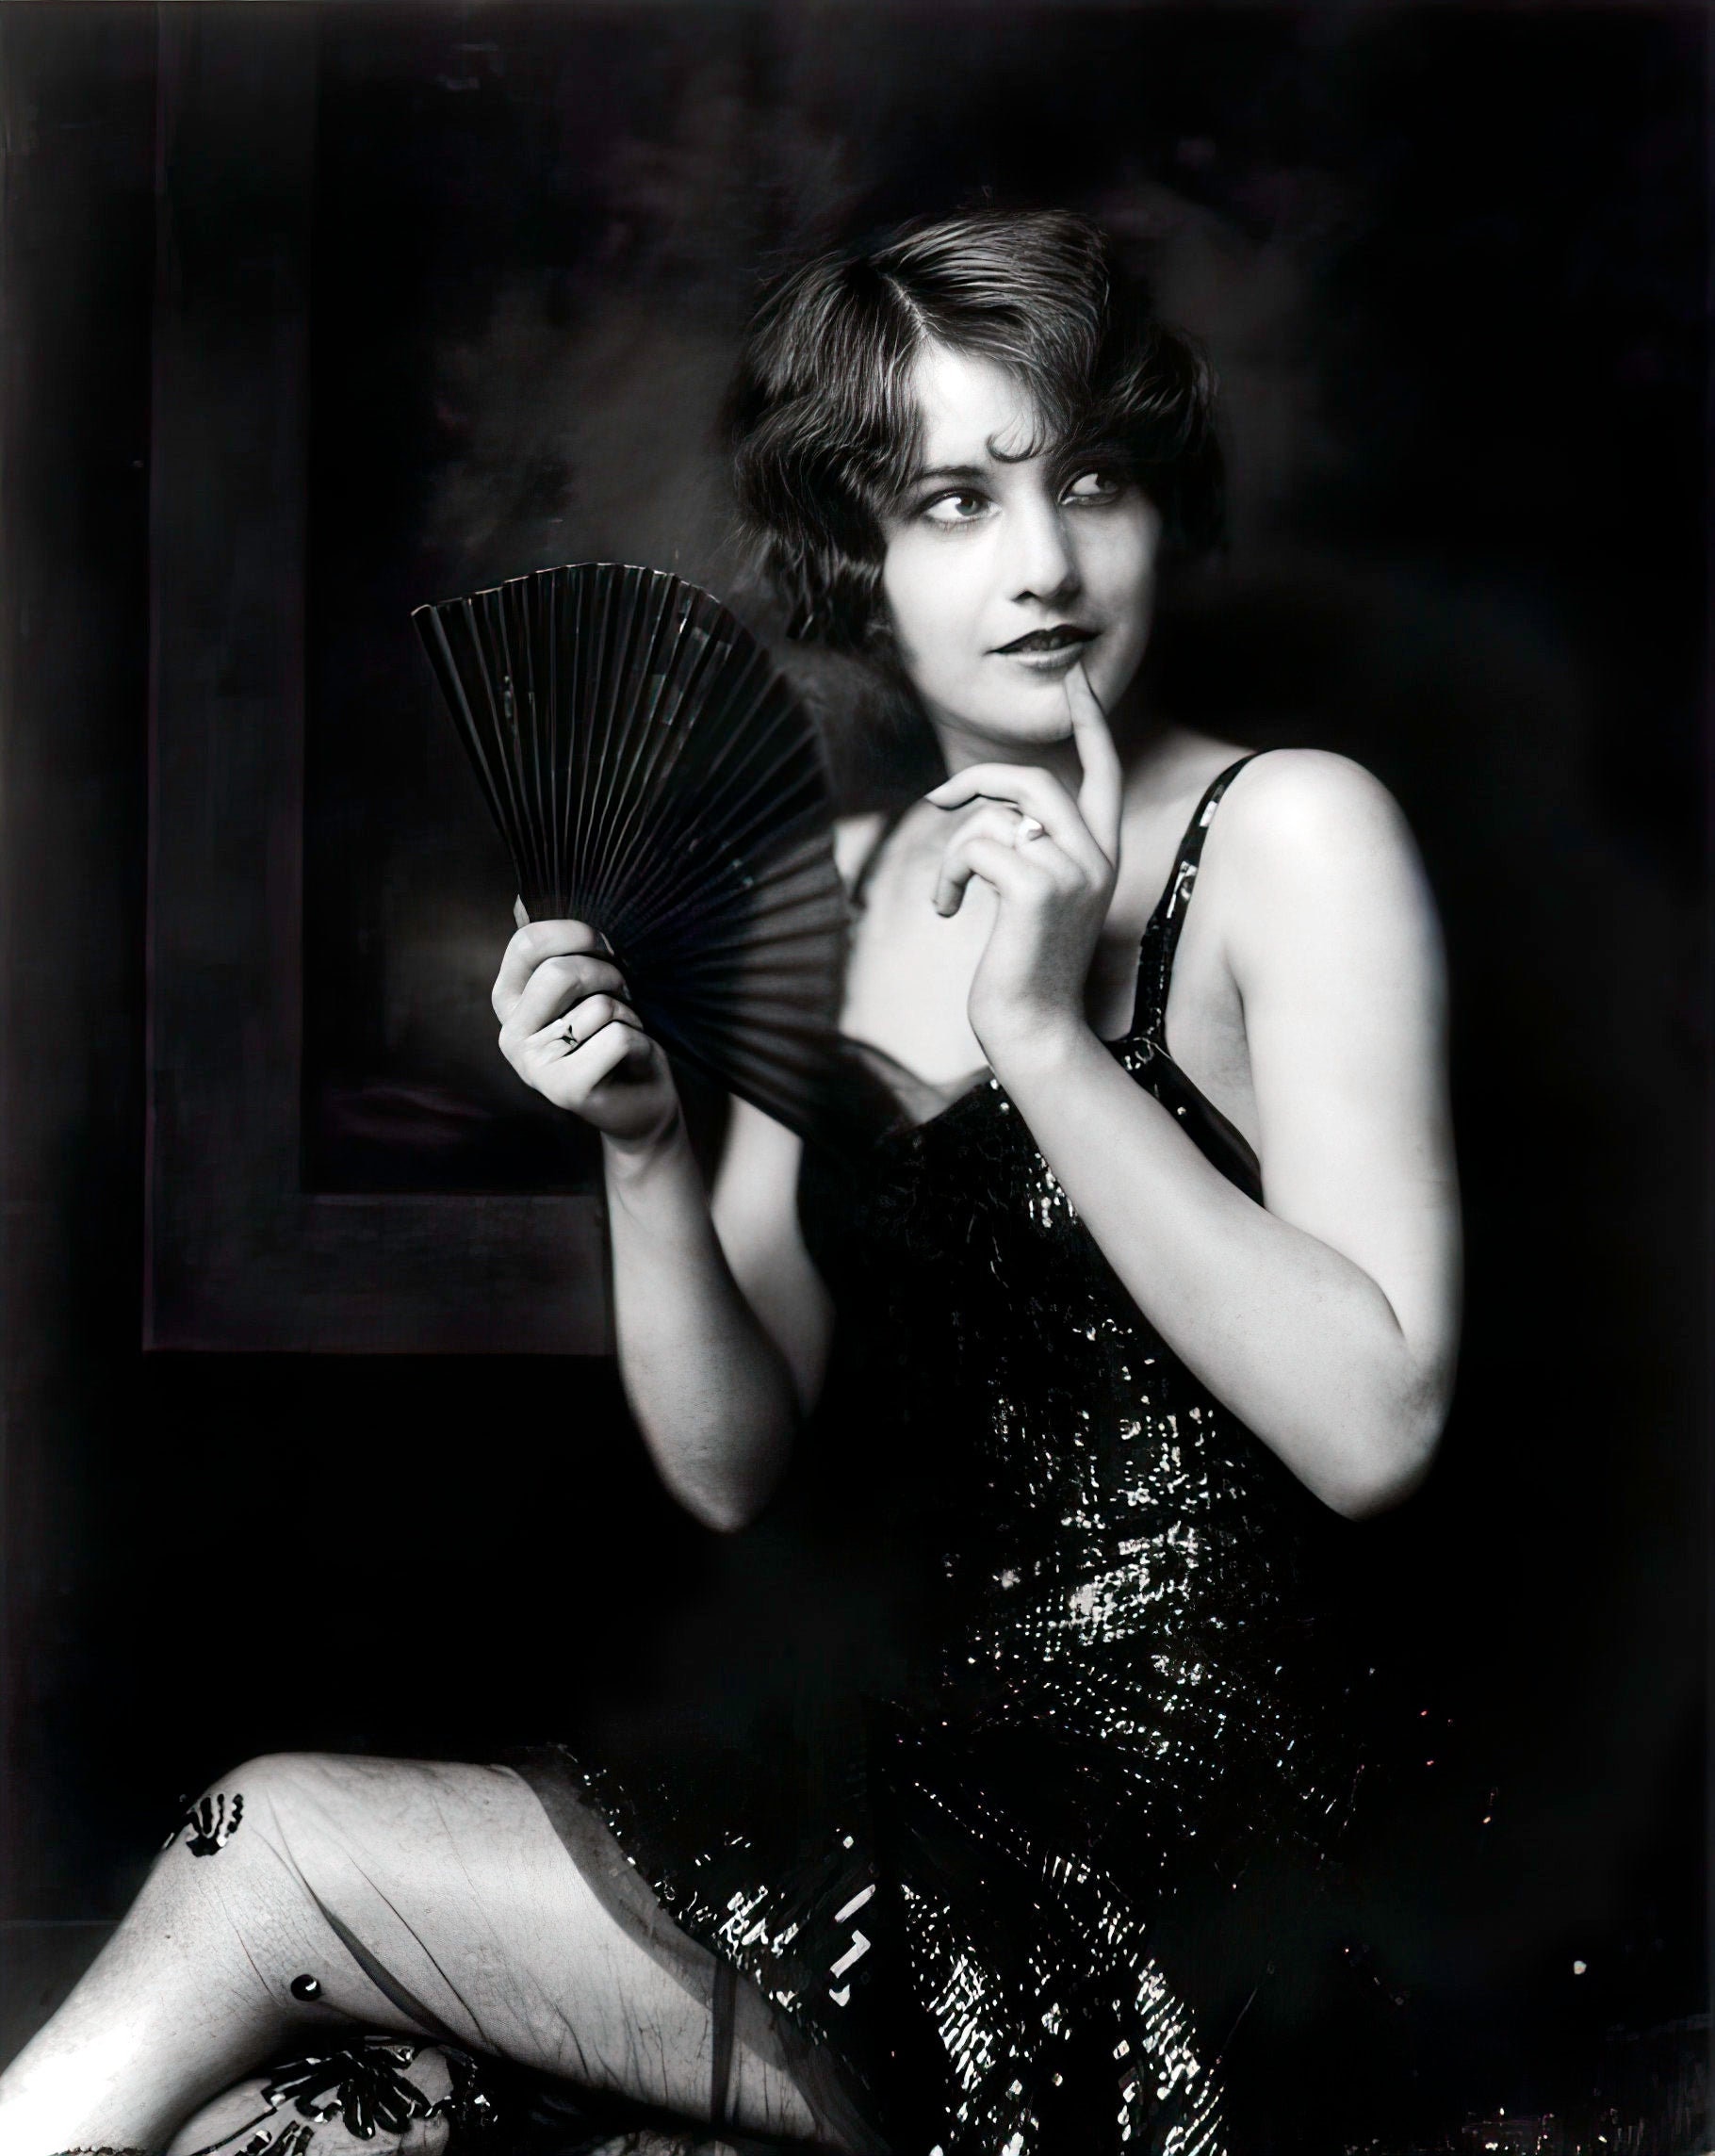 Porn Nude Barbara Stanwyck 1930s - Barbara Stanwyck 1920's Era Ziegfeld Follies Star Black - Etsy Australia